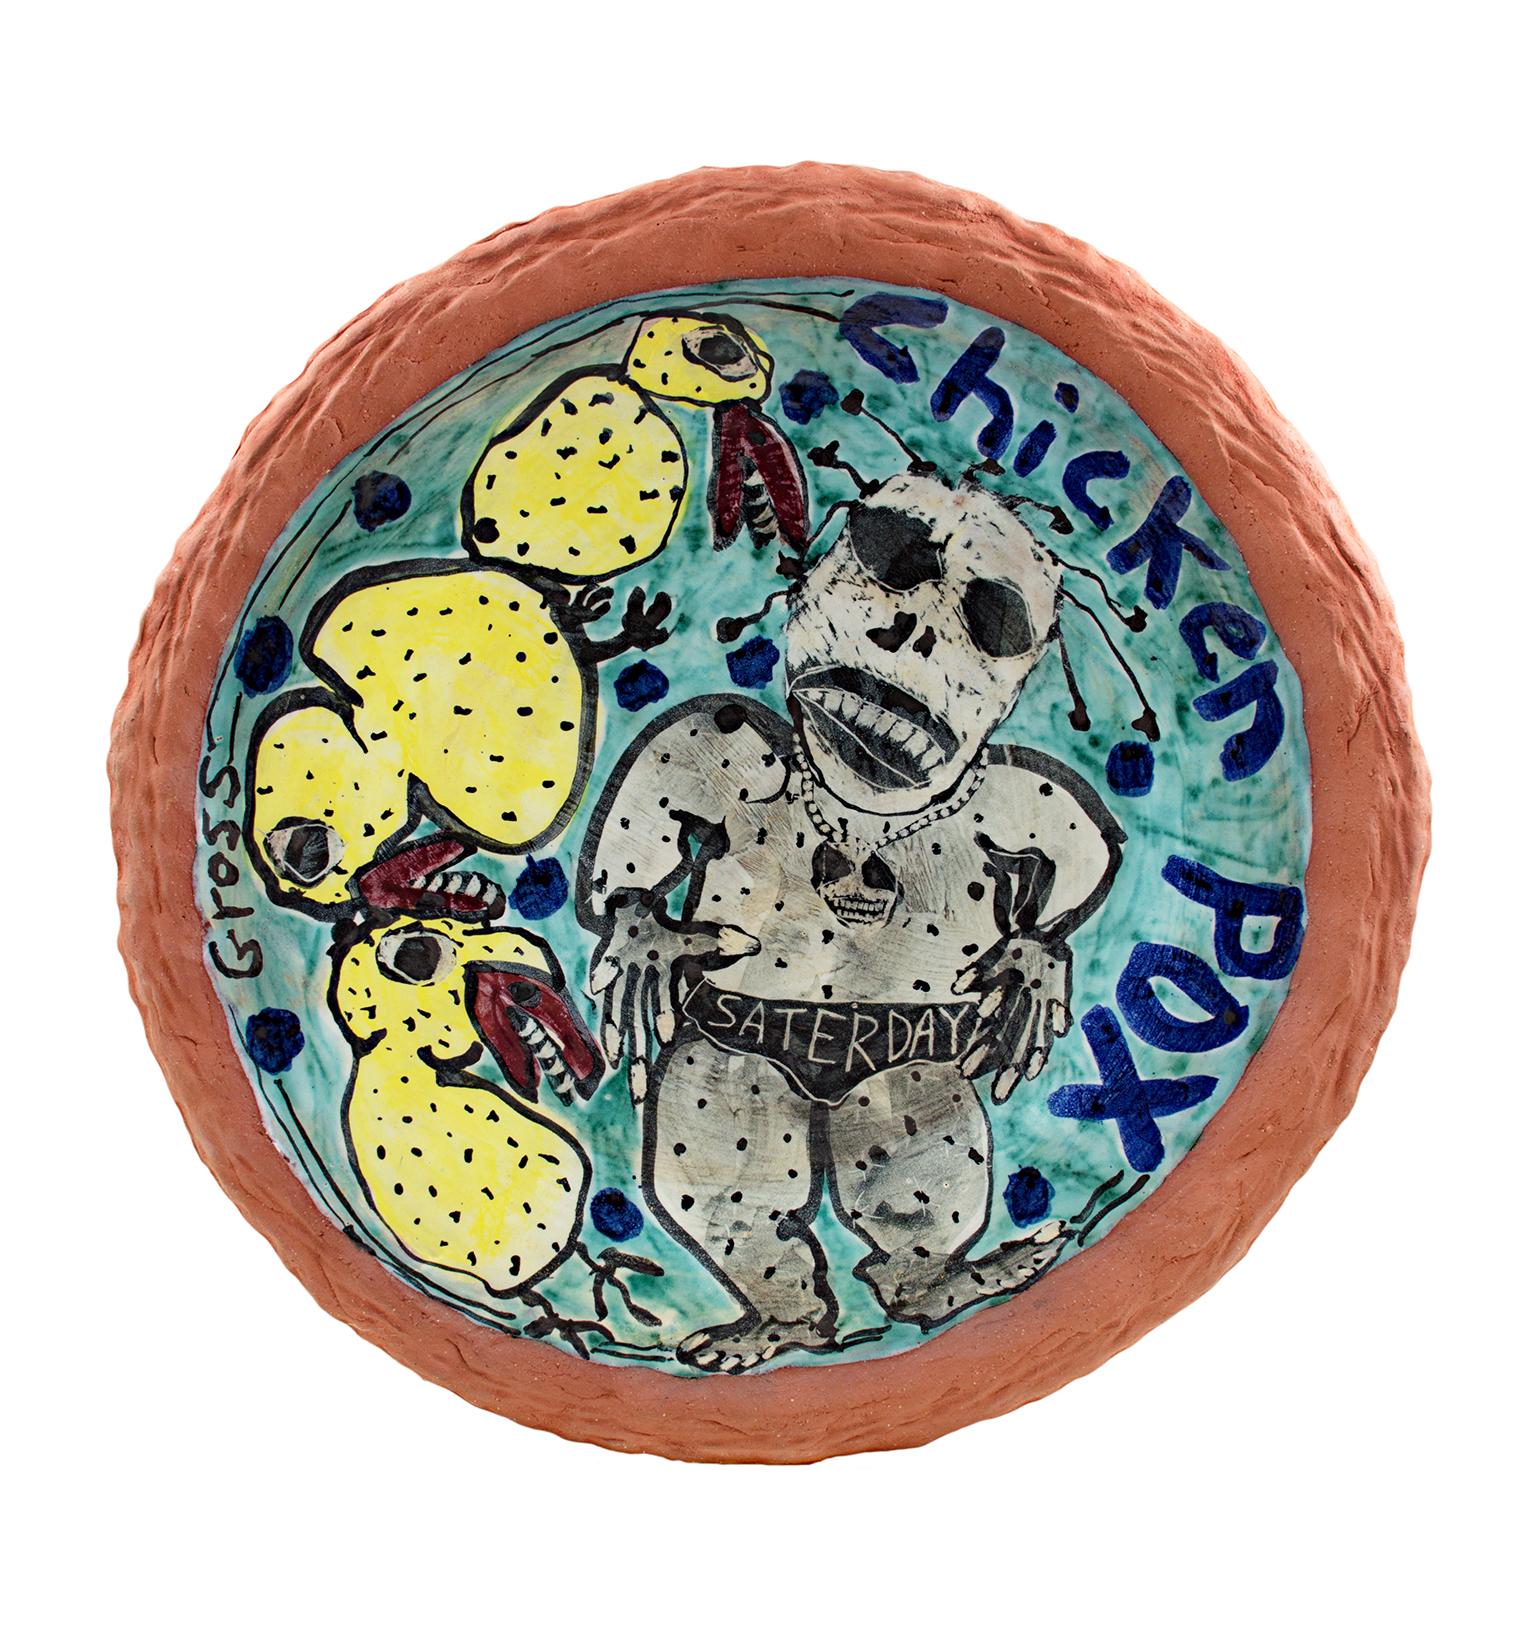 "Chicken Pox" ist eine originelle Keramikplatte von Michael Gross. Der Künstler signierte das Werk mit "Gross". Es zeigt einen grauen Mann mit Windpocken und einige gelbe Vögel mit Zähnen. 

20" Durchmesser

Die Keramikskulpturen des Künstlers